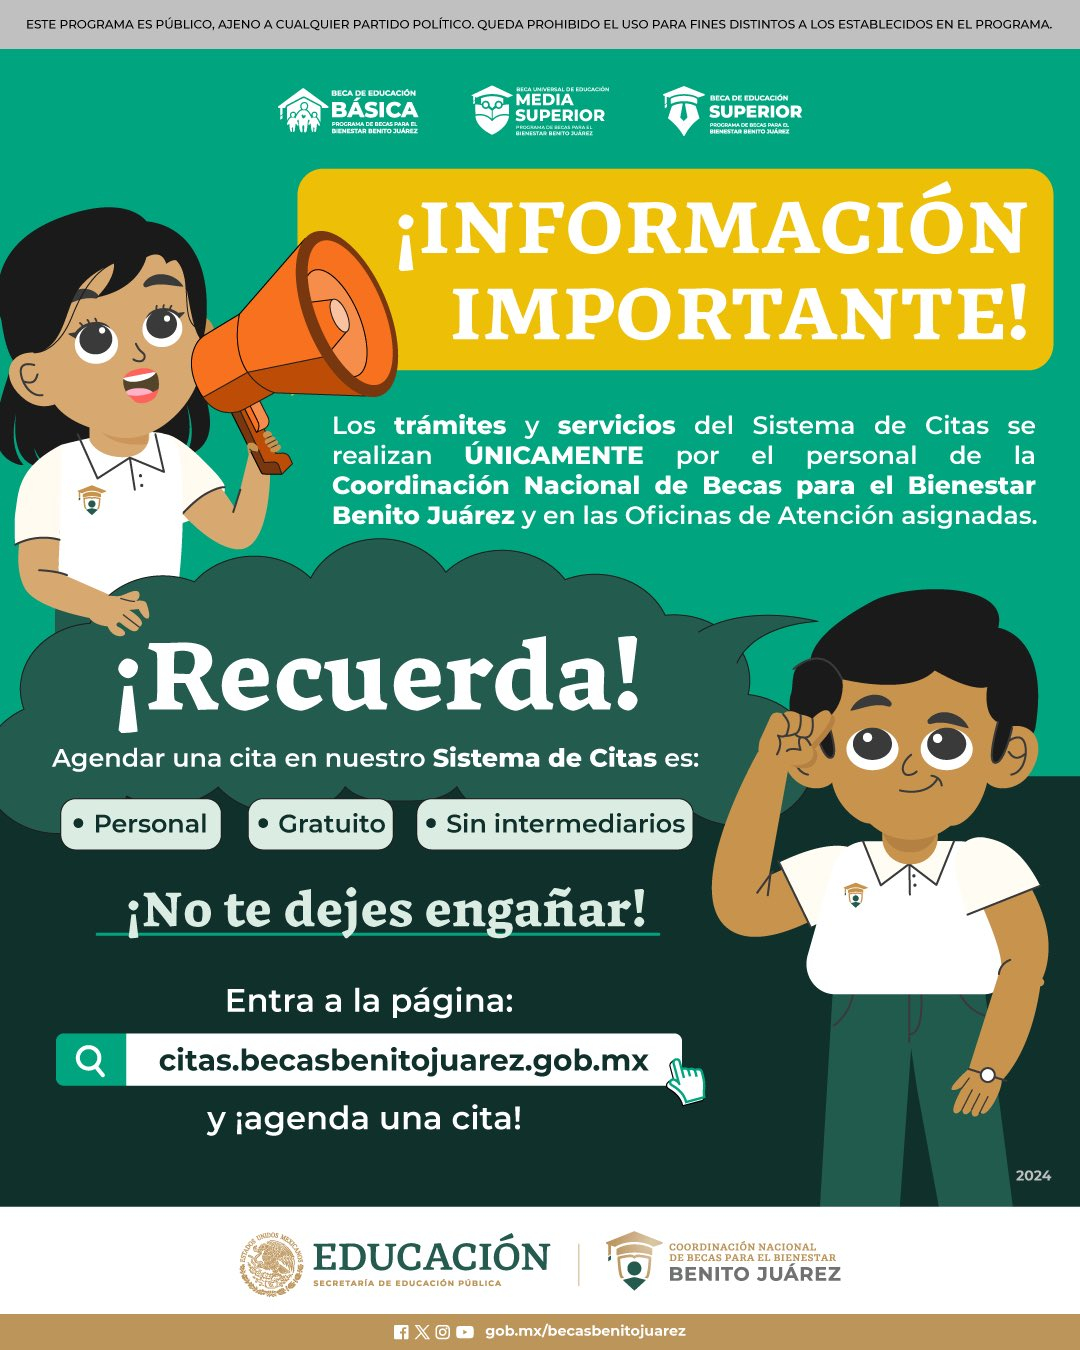 El pago de la Beca Benito Juárez se pagará a través de la Tarjeta Bienestar. Foto: Gobierno de México